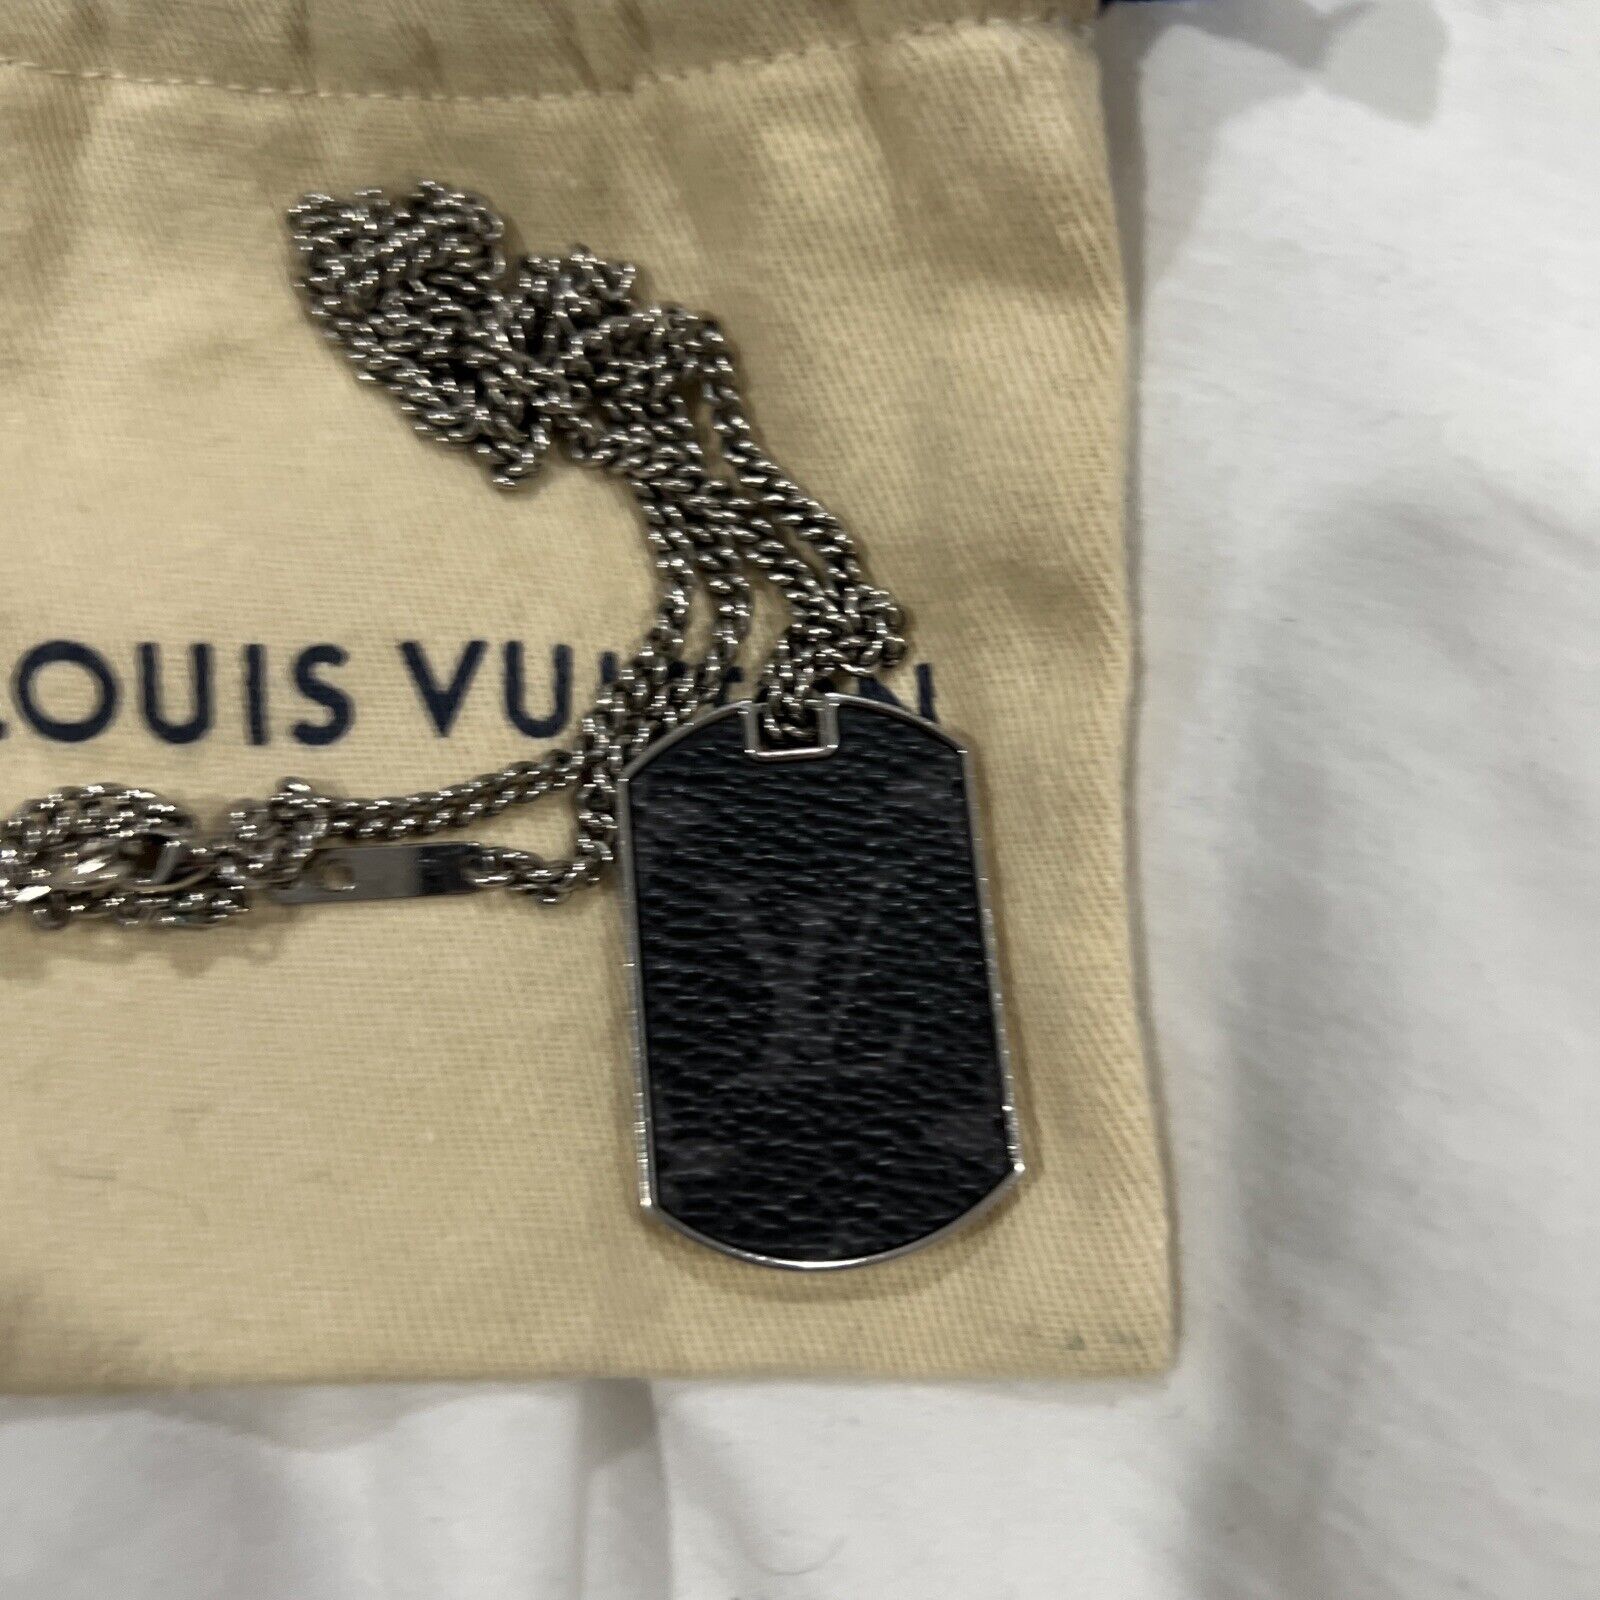 Louis Vuitton, Jewelry, Louis Vuitton Necklace Monogram Eclipse Collier  Charms M6364 Pendant Pill Ca